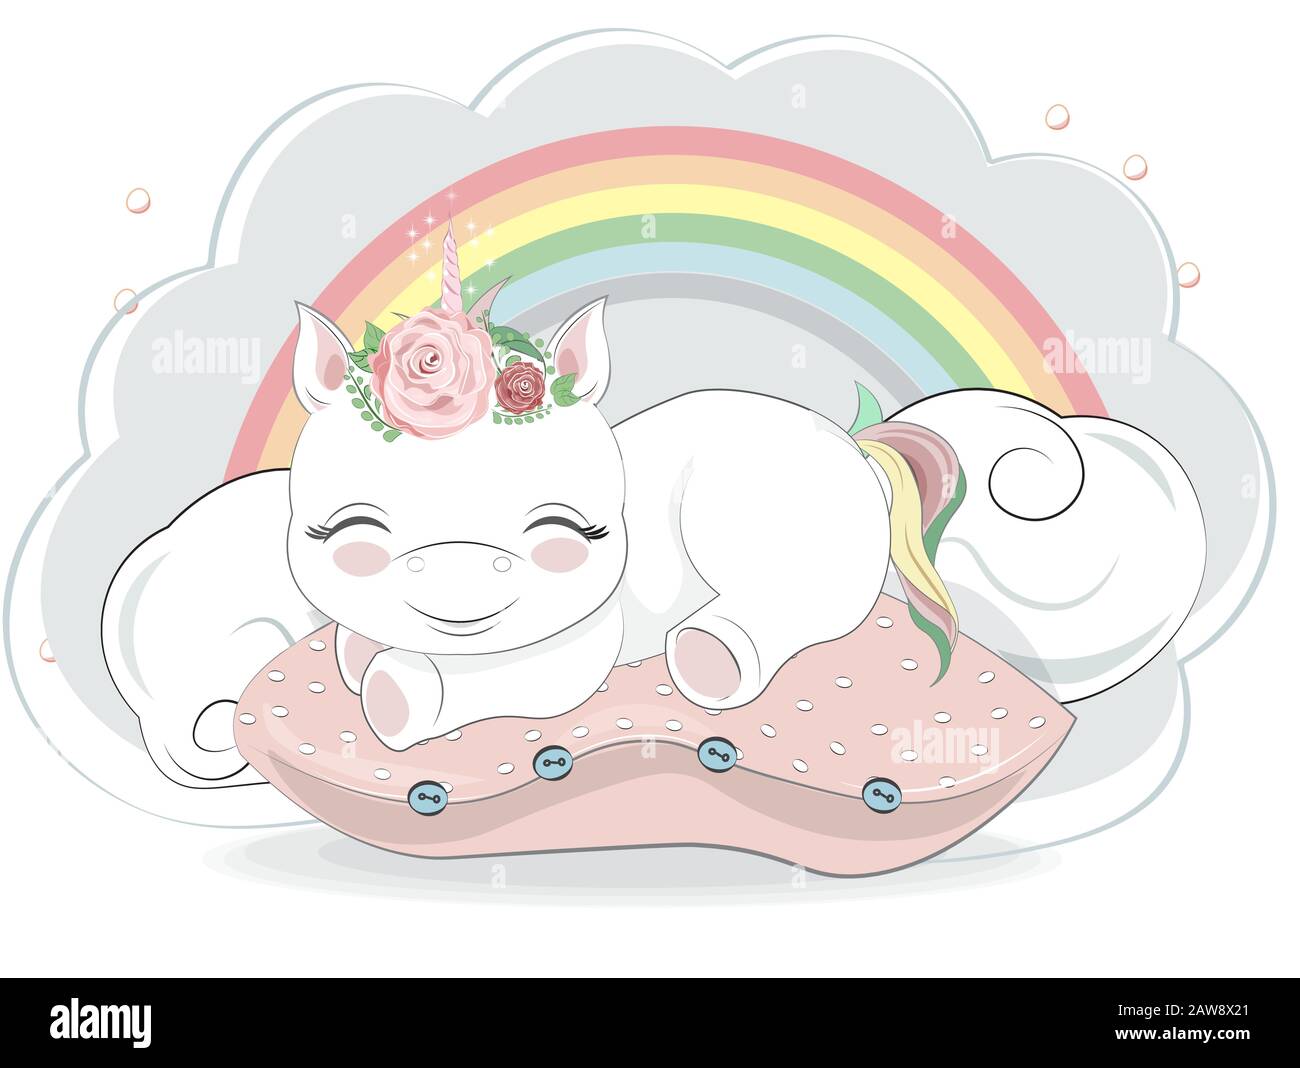 Almohada con estampado de dibujos animados para bebé, almohada